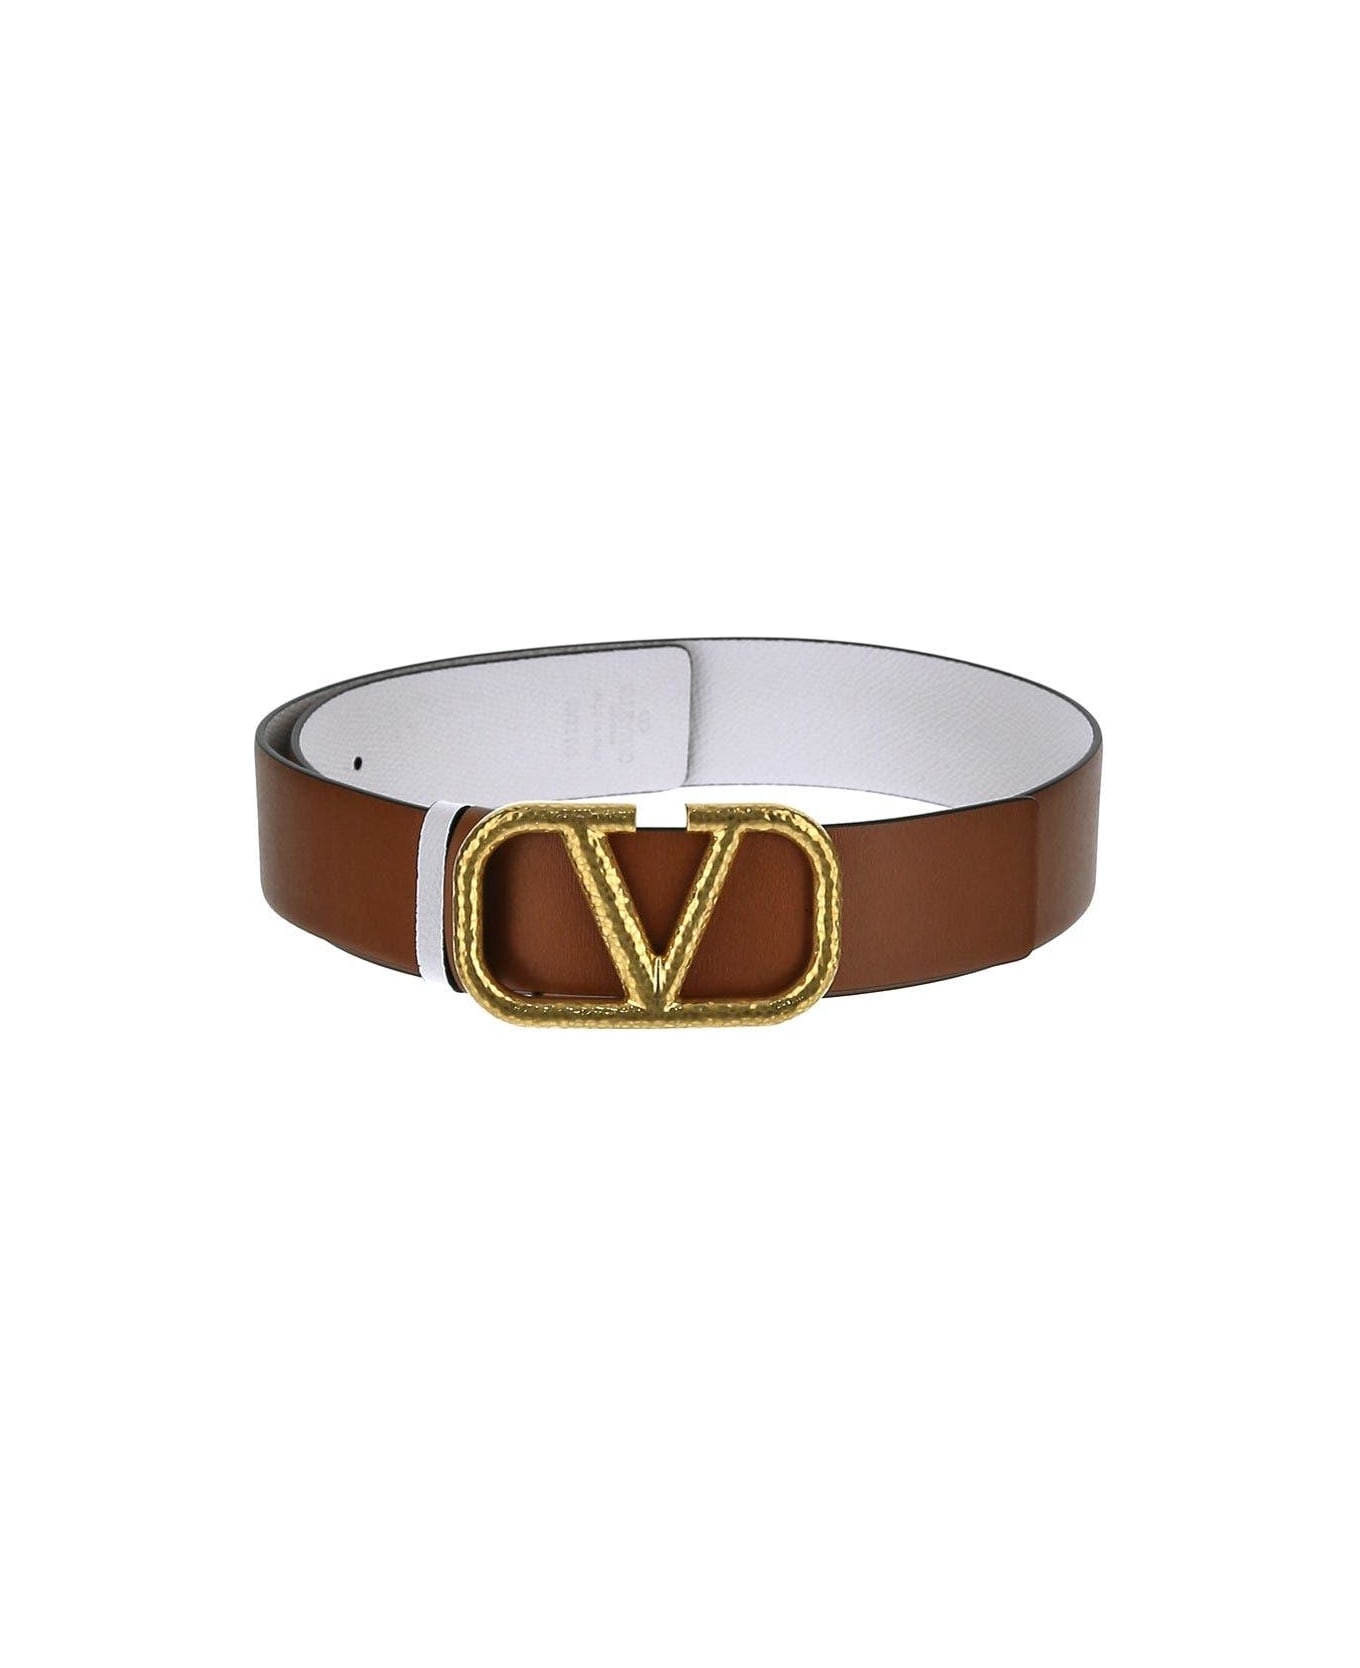 Valentino Garavani Reversible Belt - Selleria/bianco ottico